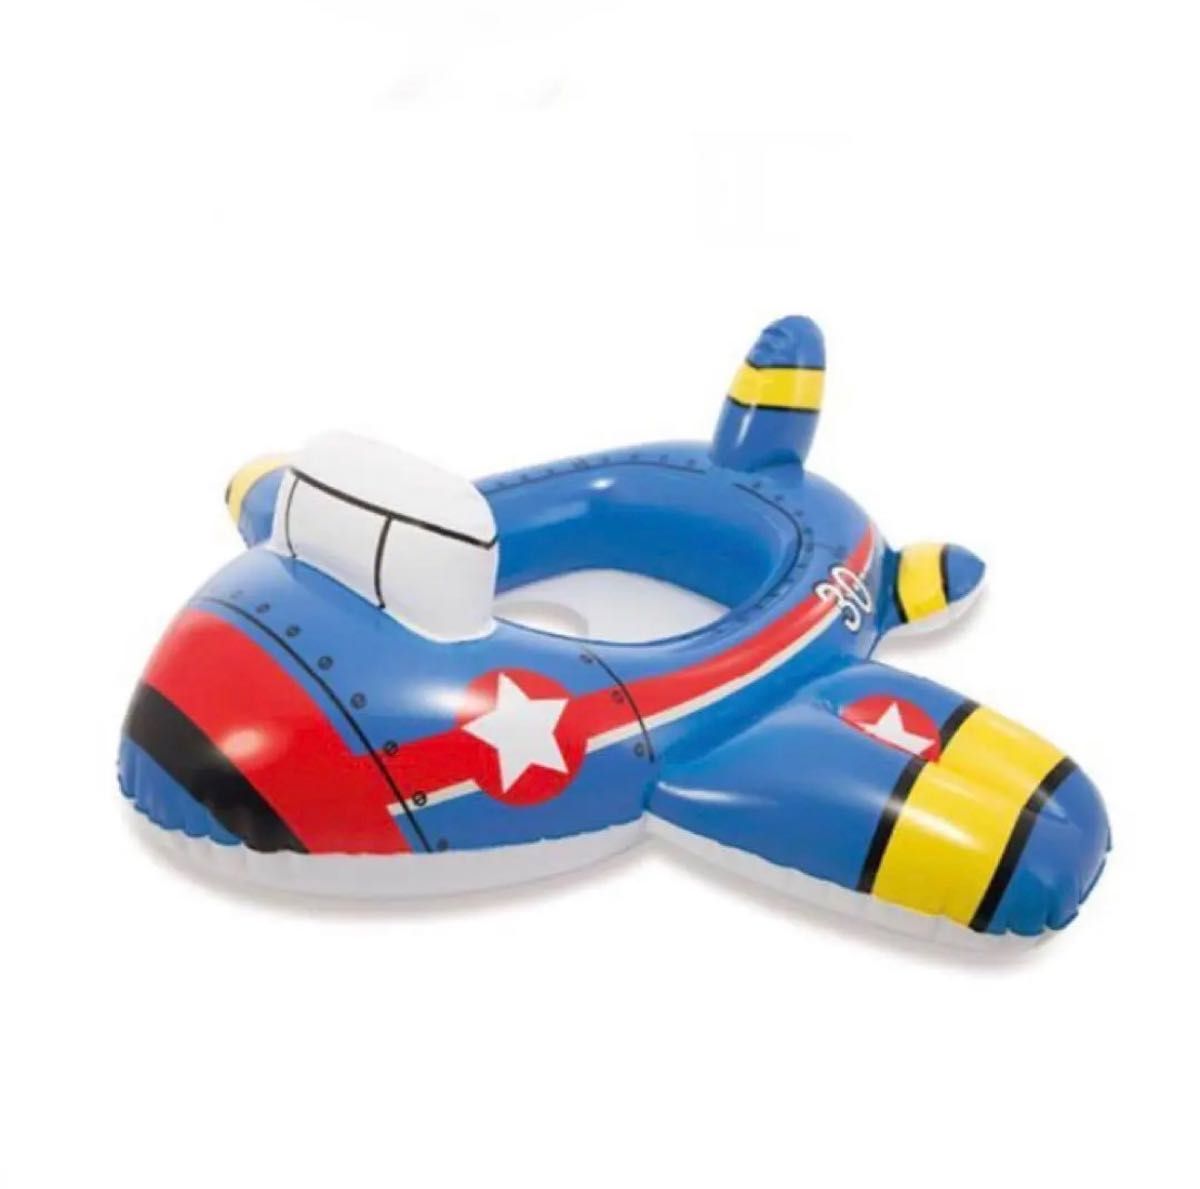 ベビー 浮き輪 飛行機 プール 足入れ キッズ 乗り物 海 幼児用 ベビーフロート うきわ 子供用浮き輪 赤ちゃん 足入れ 足抜き